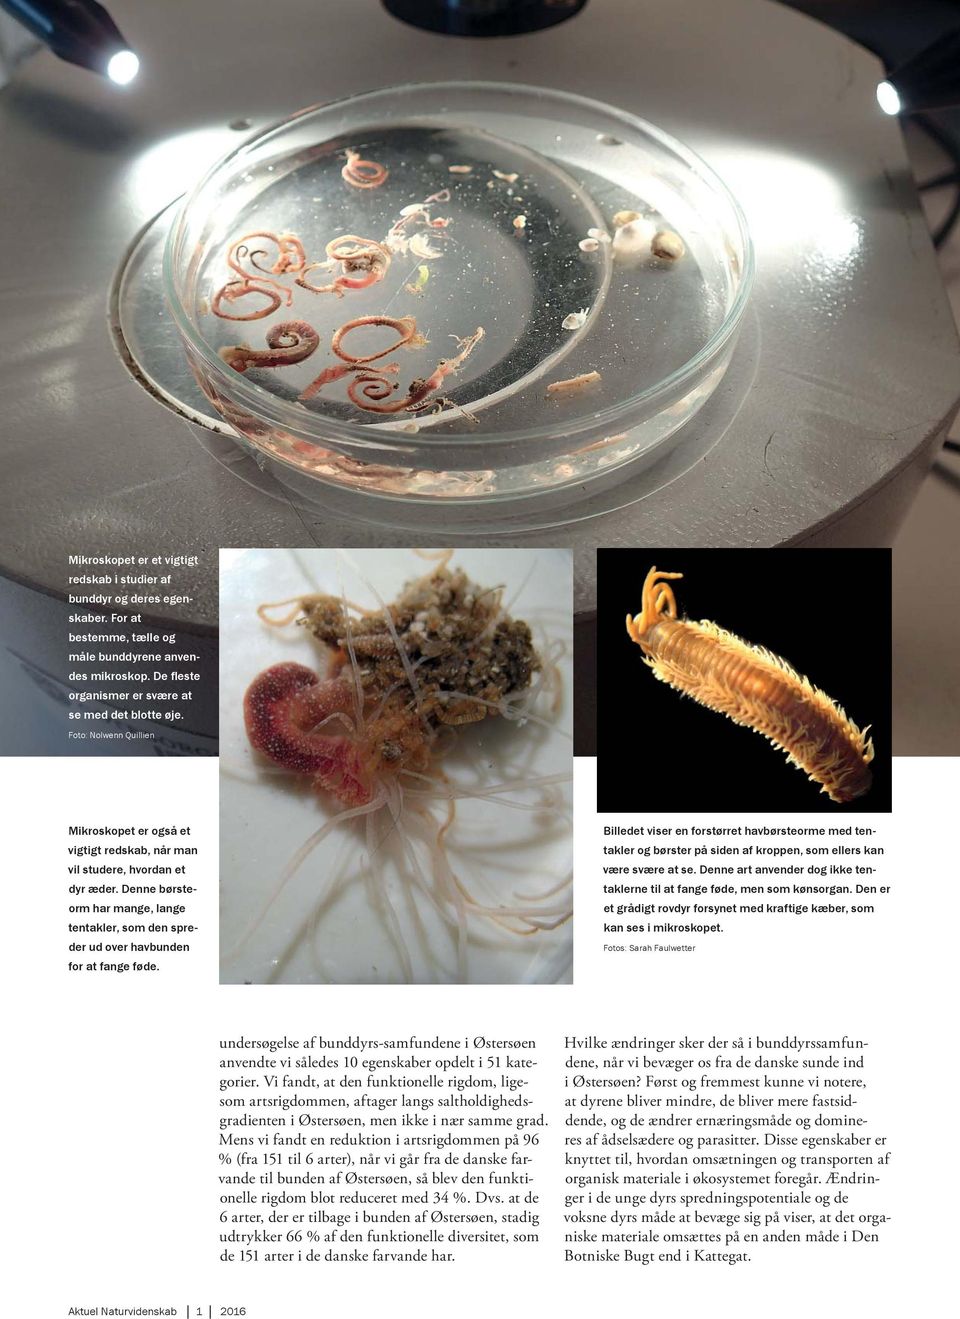 Denne børsteorm har mange, lange tentakler, som den spreder ud over havbunden for at fange føde.